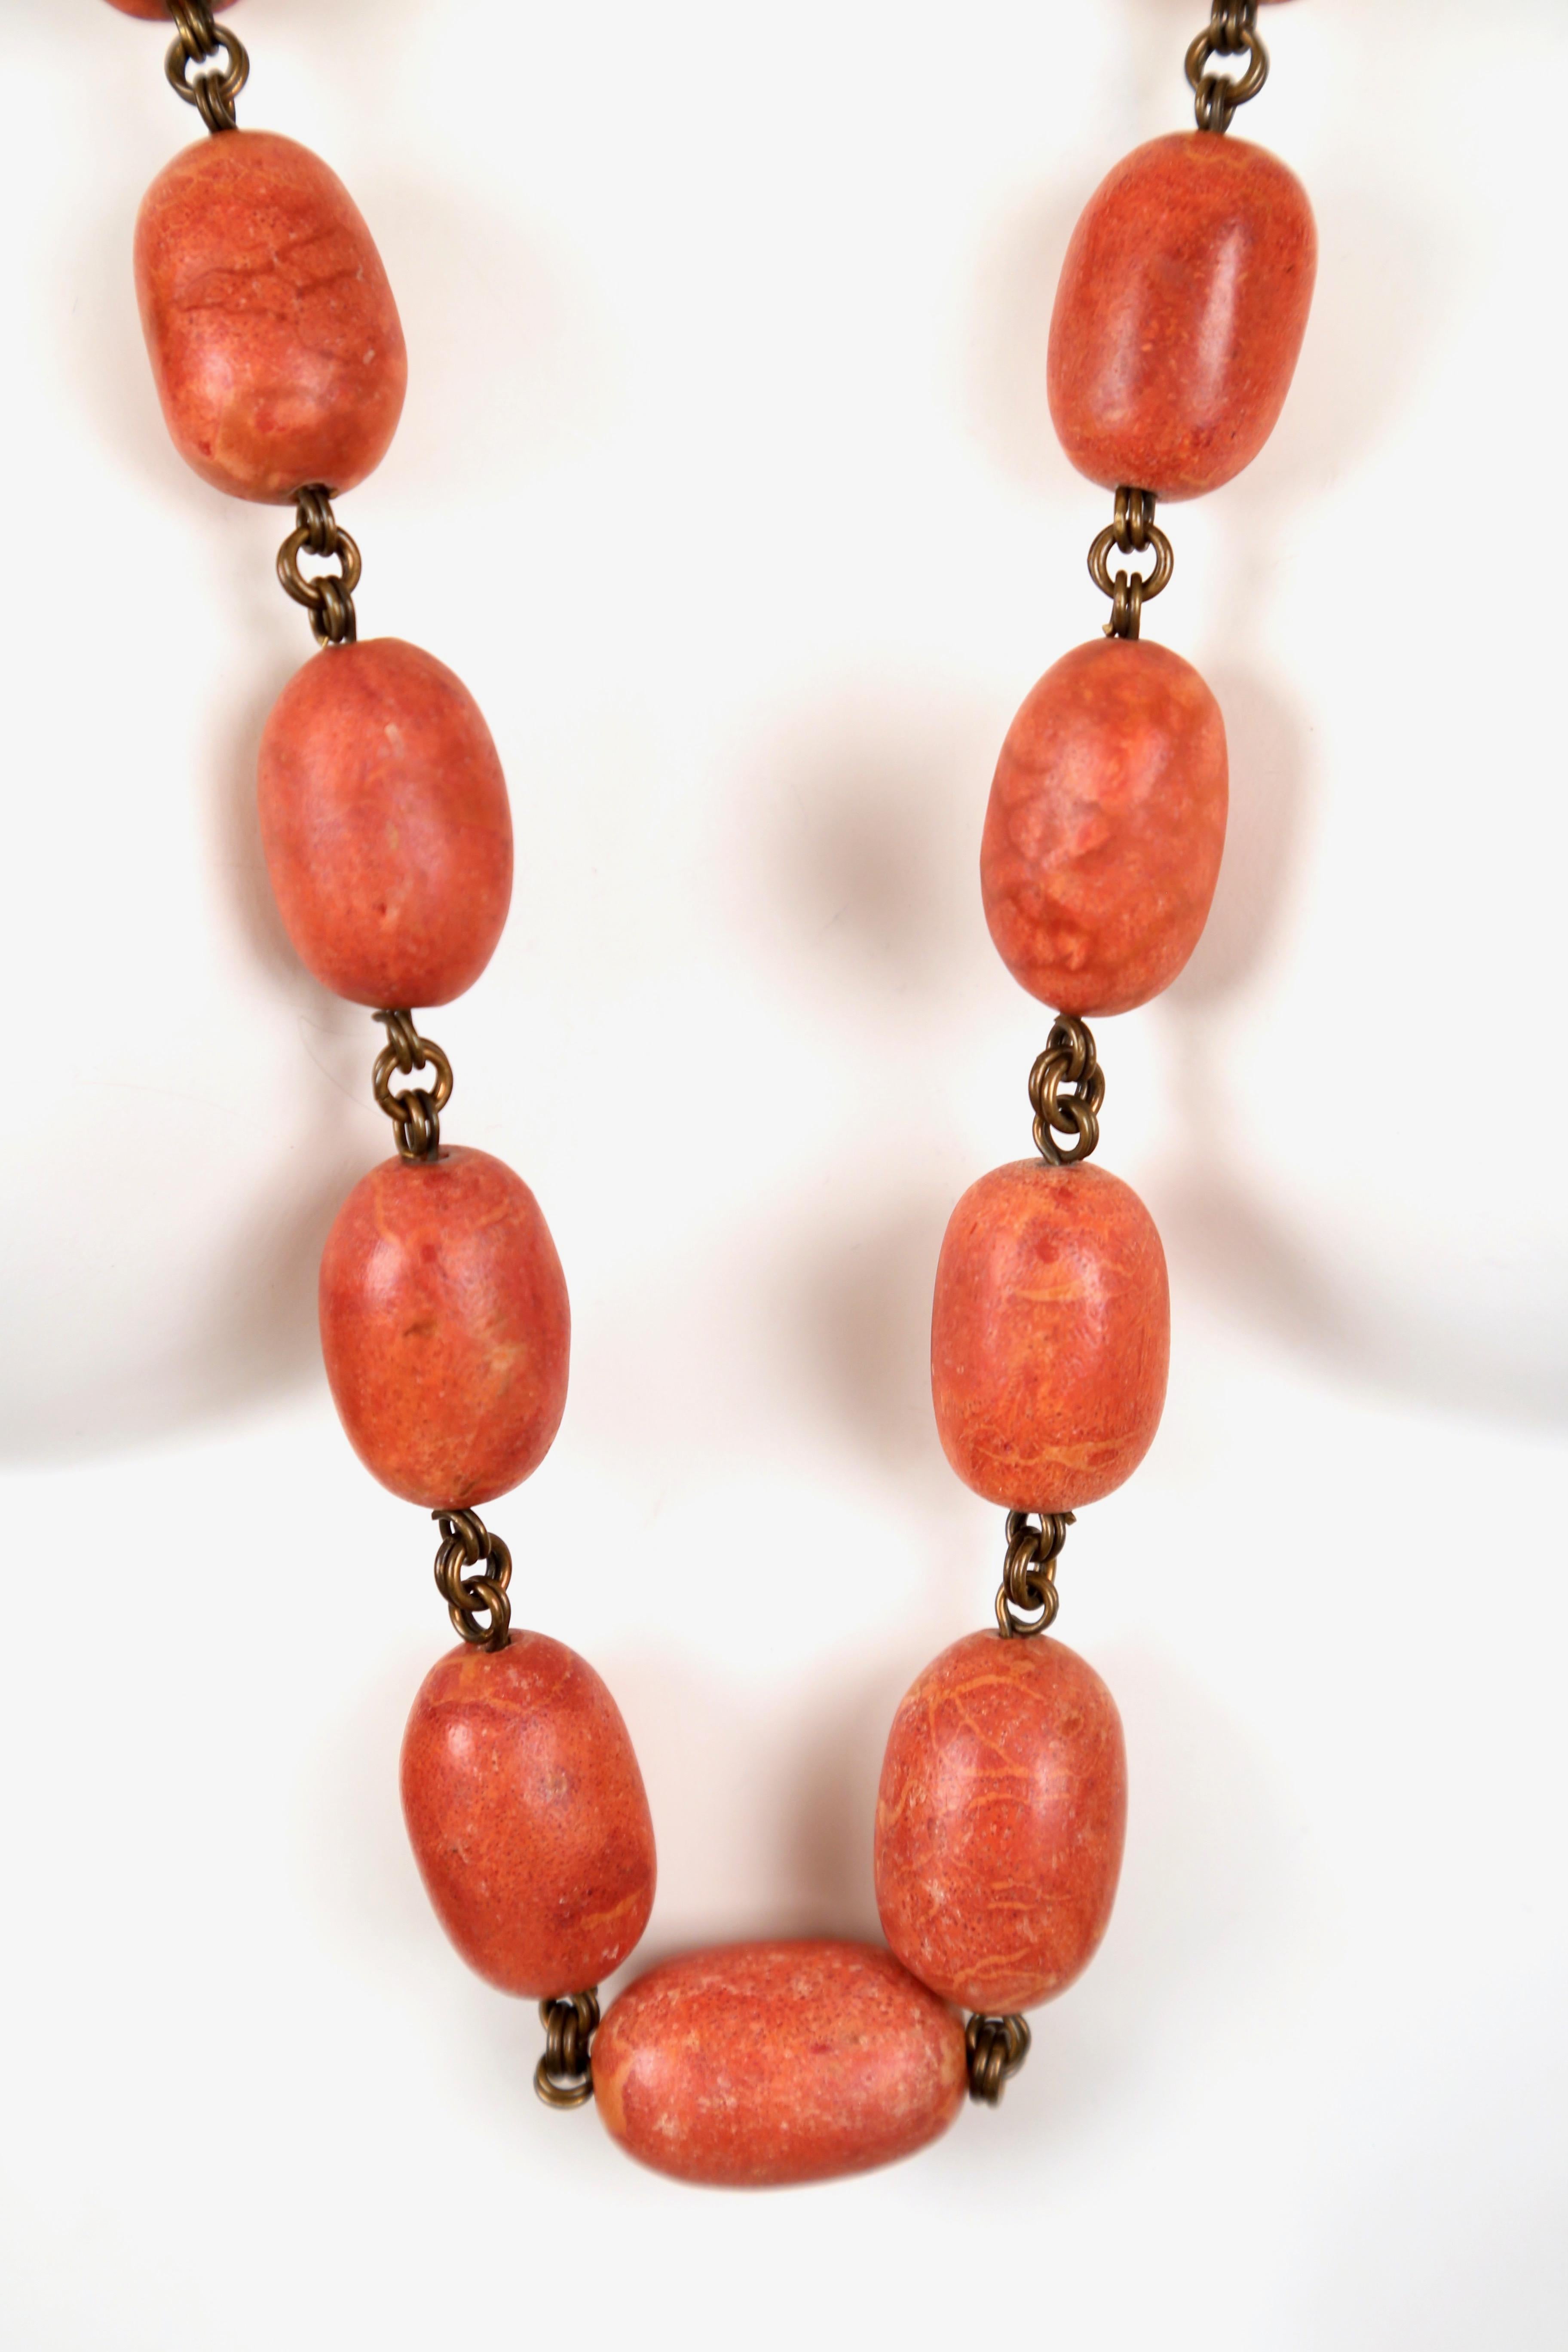 Long collier surdimensionné en perles de corail sur chaîne en bronze, conçu par Stephen Dweck et datant de la fin des années 1980, acheté chez Bergdorf Goodman. Le collier mesure approximativement 37